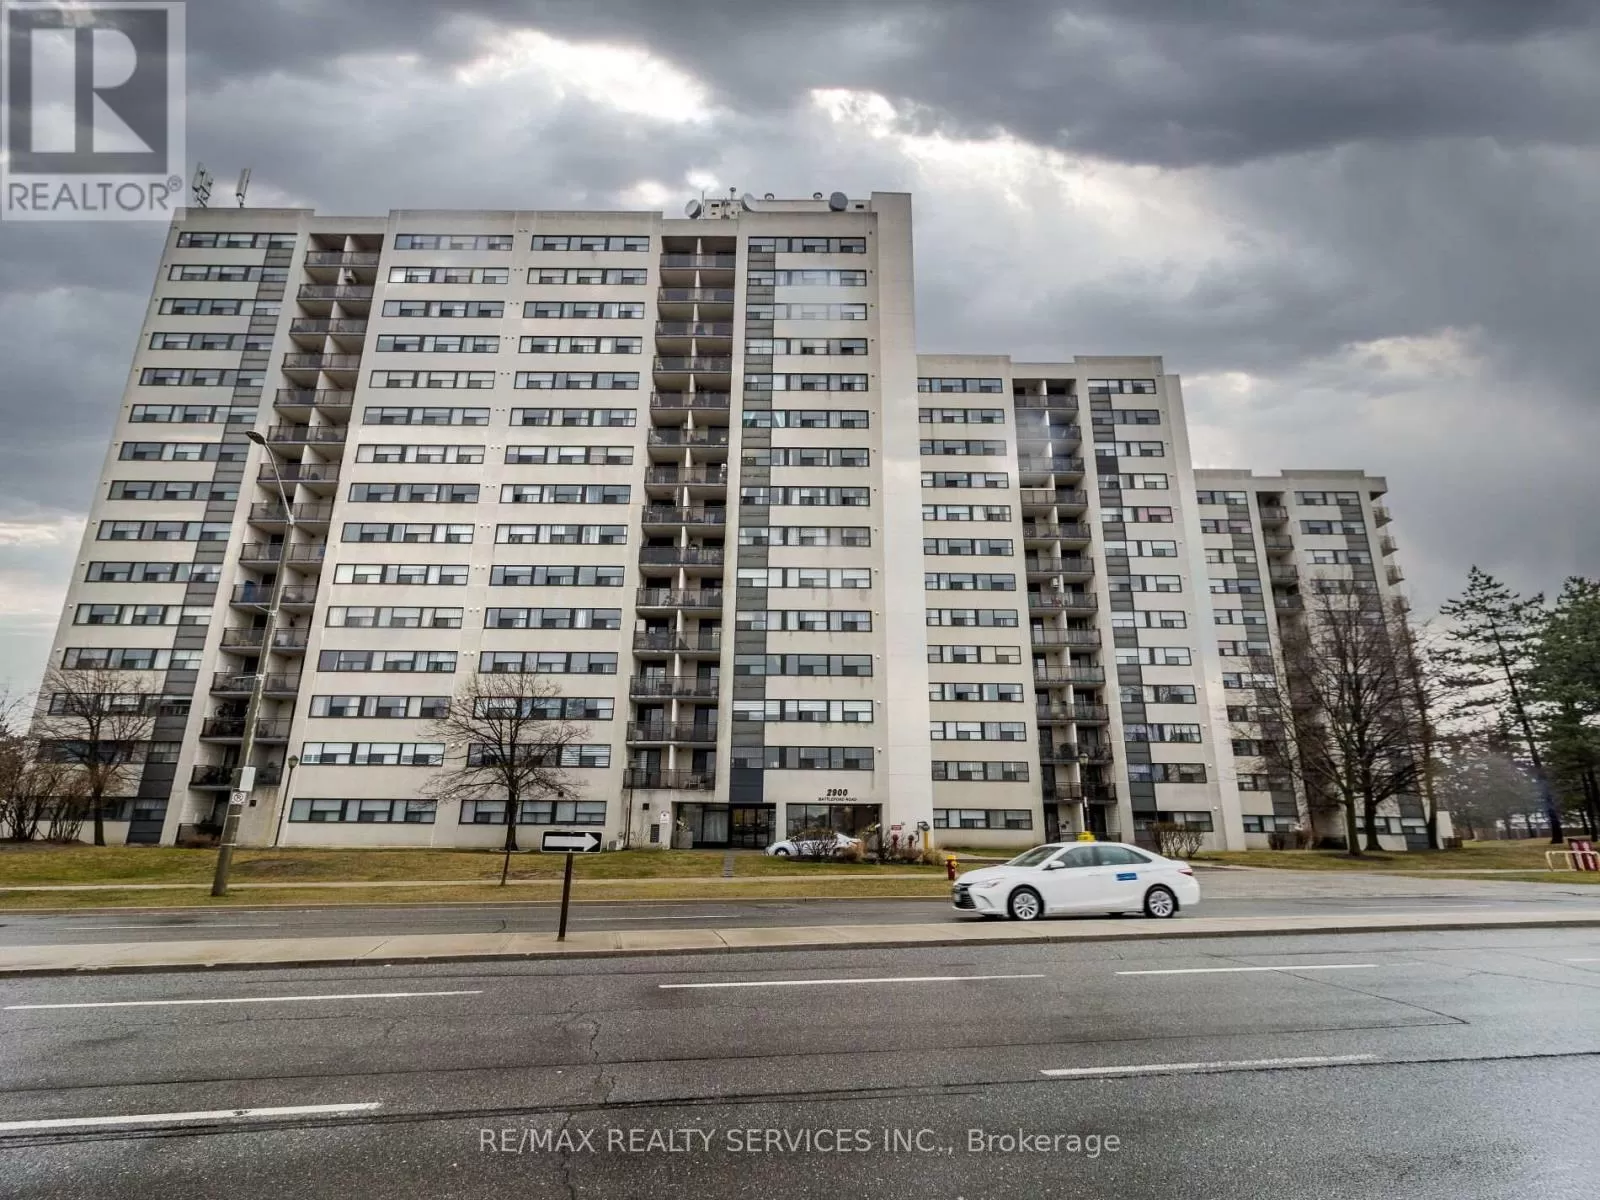 Apartment for rent: ##2009 -251 Manitoba St, Toronto, Ontario M8Y 0C7